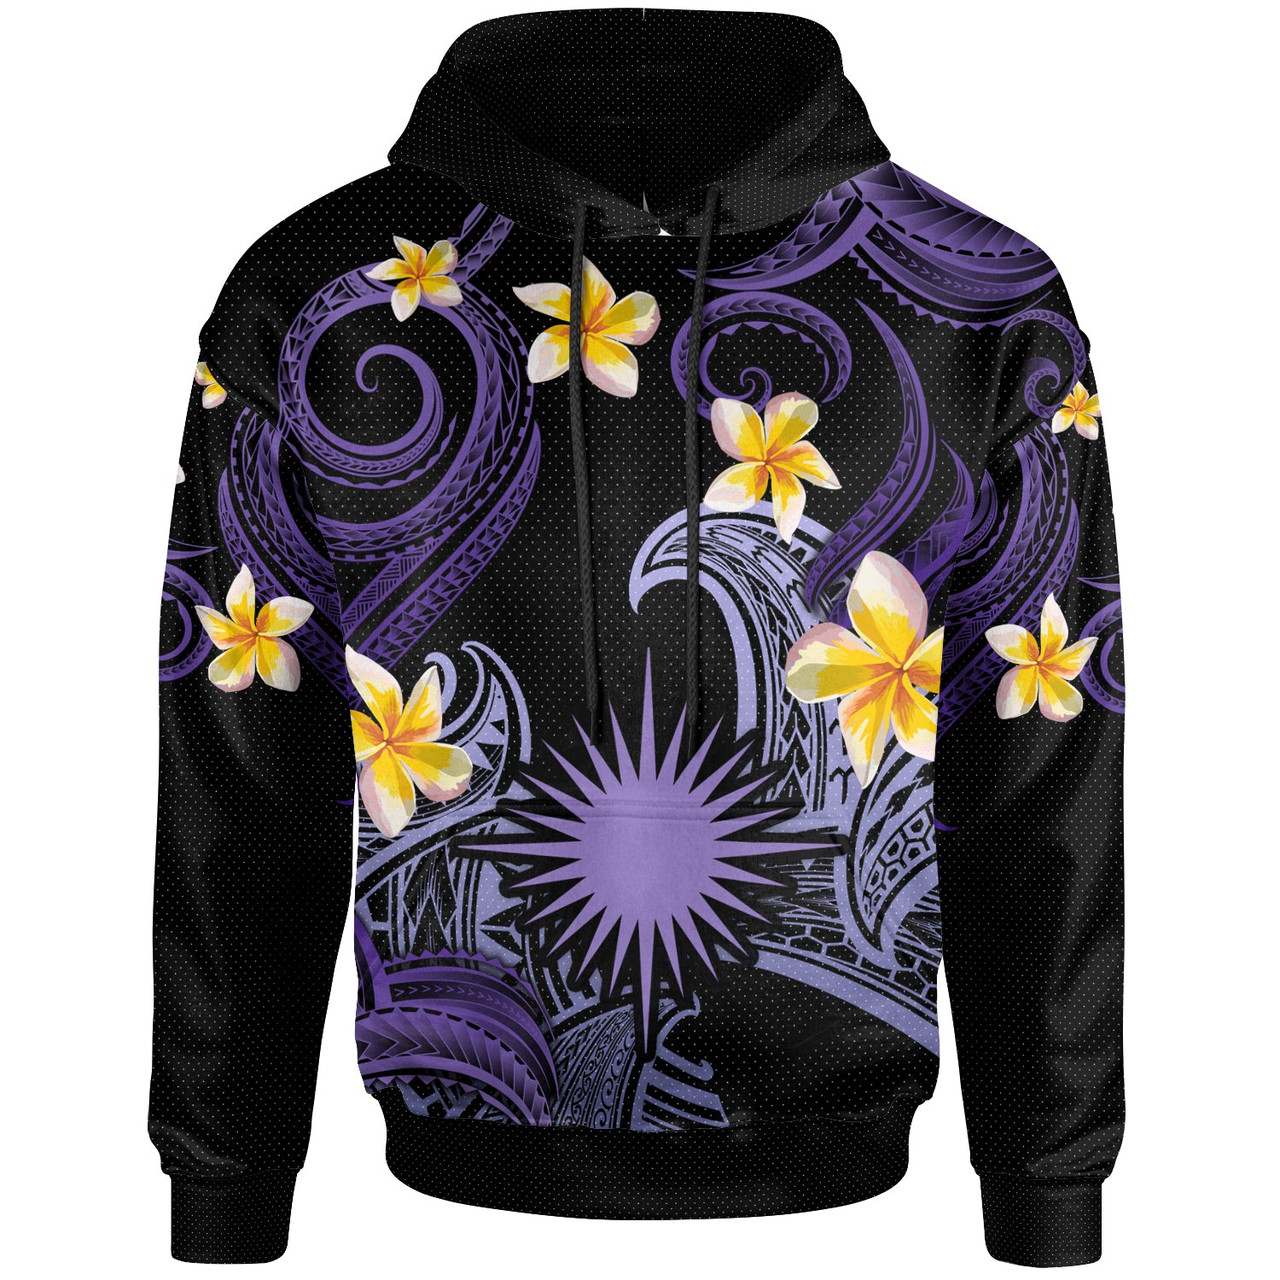 Marshall Islands Hoodie - Custom Personalised Polynesian Waves with Plumeria Flowers (Purple)